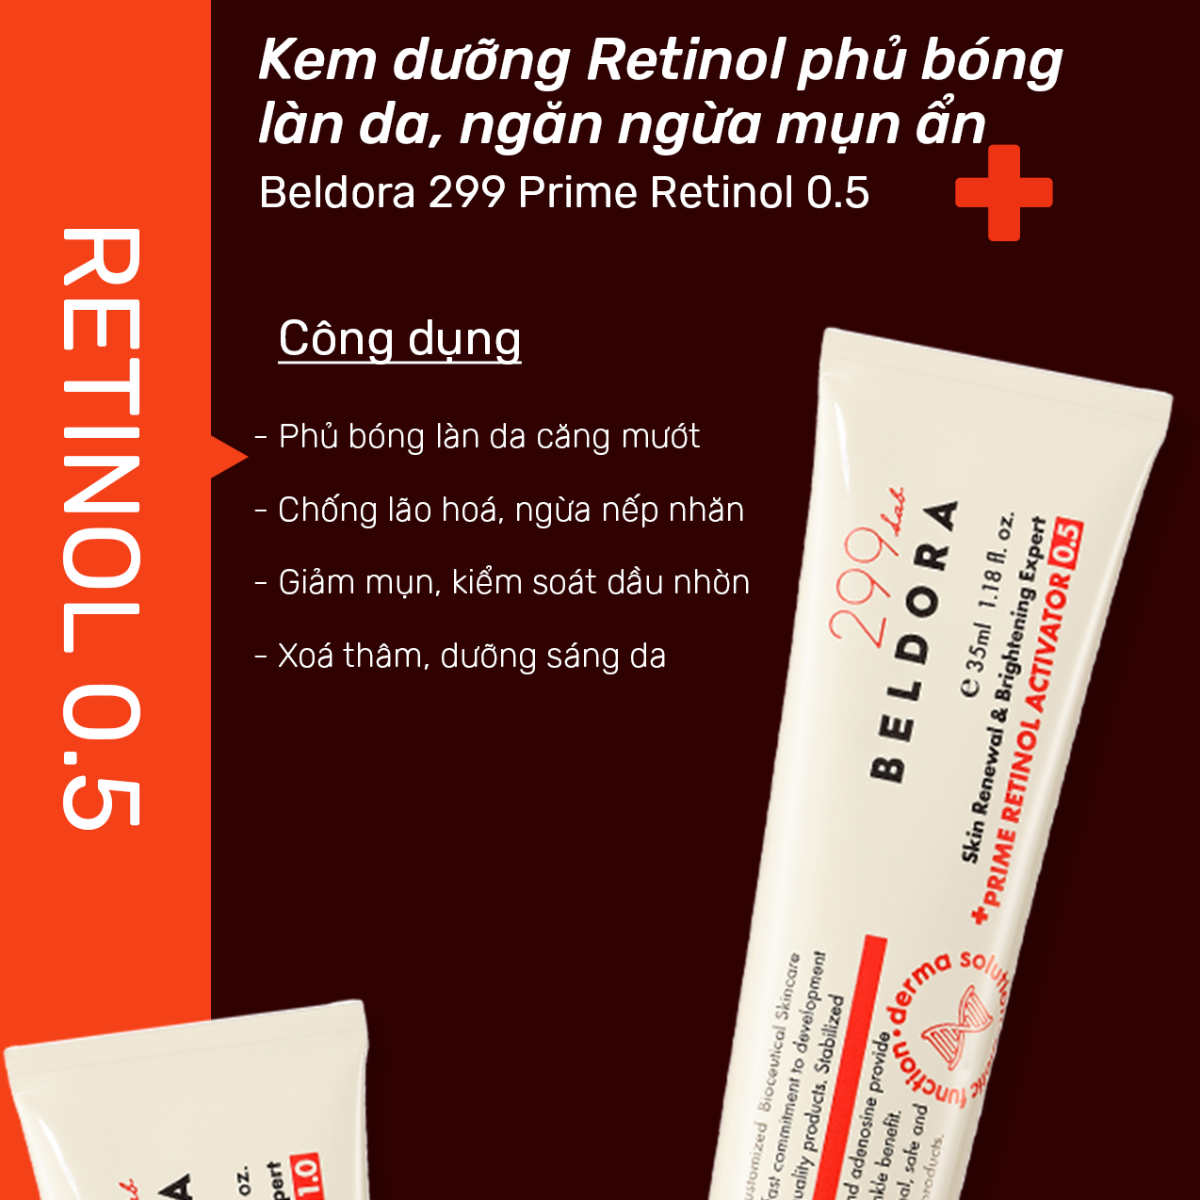 Kem Dưỡng Beldora 299 Retinol 0.5 Phủ Bóng, Ngừa Mụn 